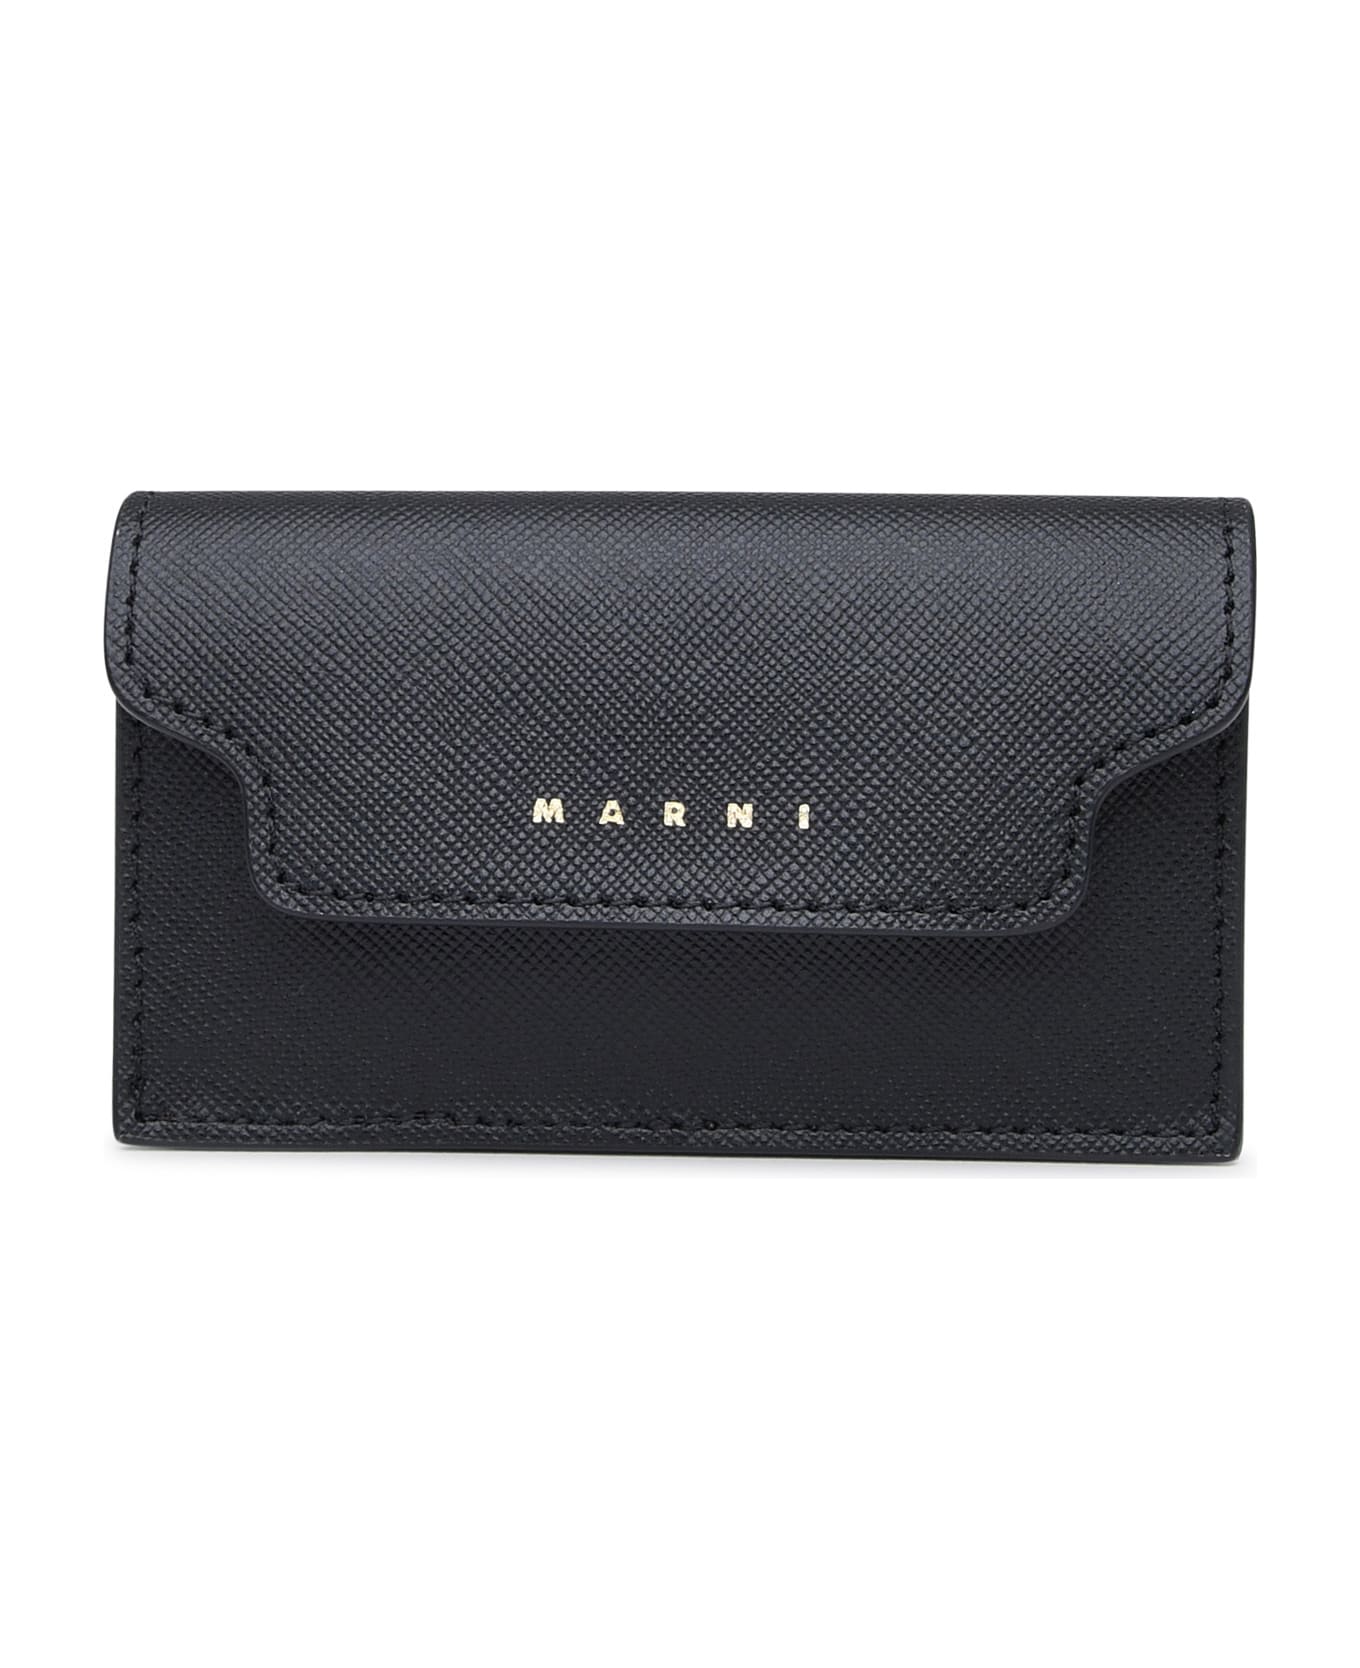 Marni Black Leather Cardholder - BLACK